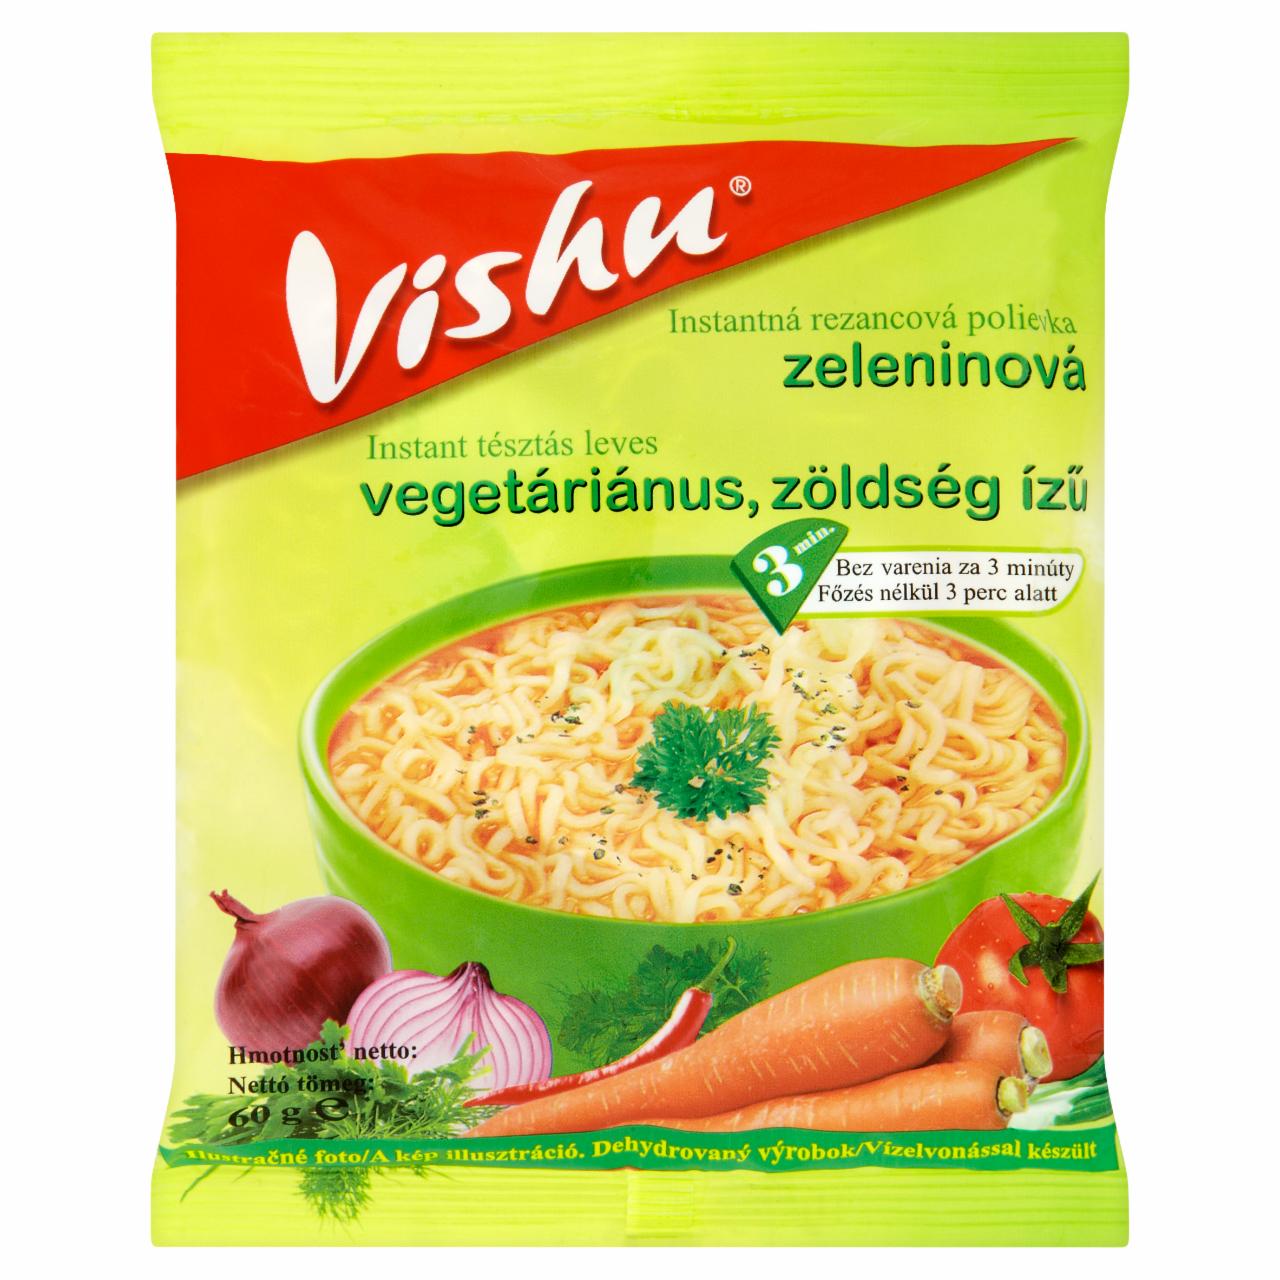 Képek - Vishu vegetáriánus, zöldség ízű instant tésztás leves 60 g